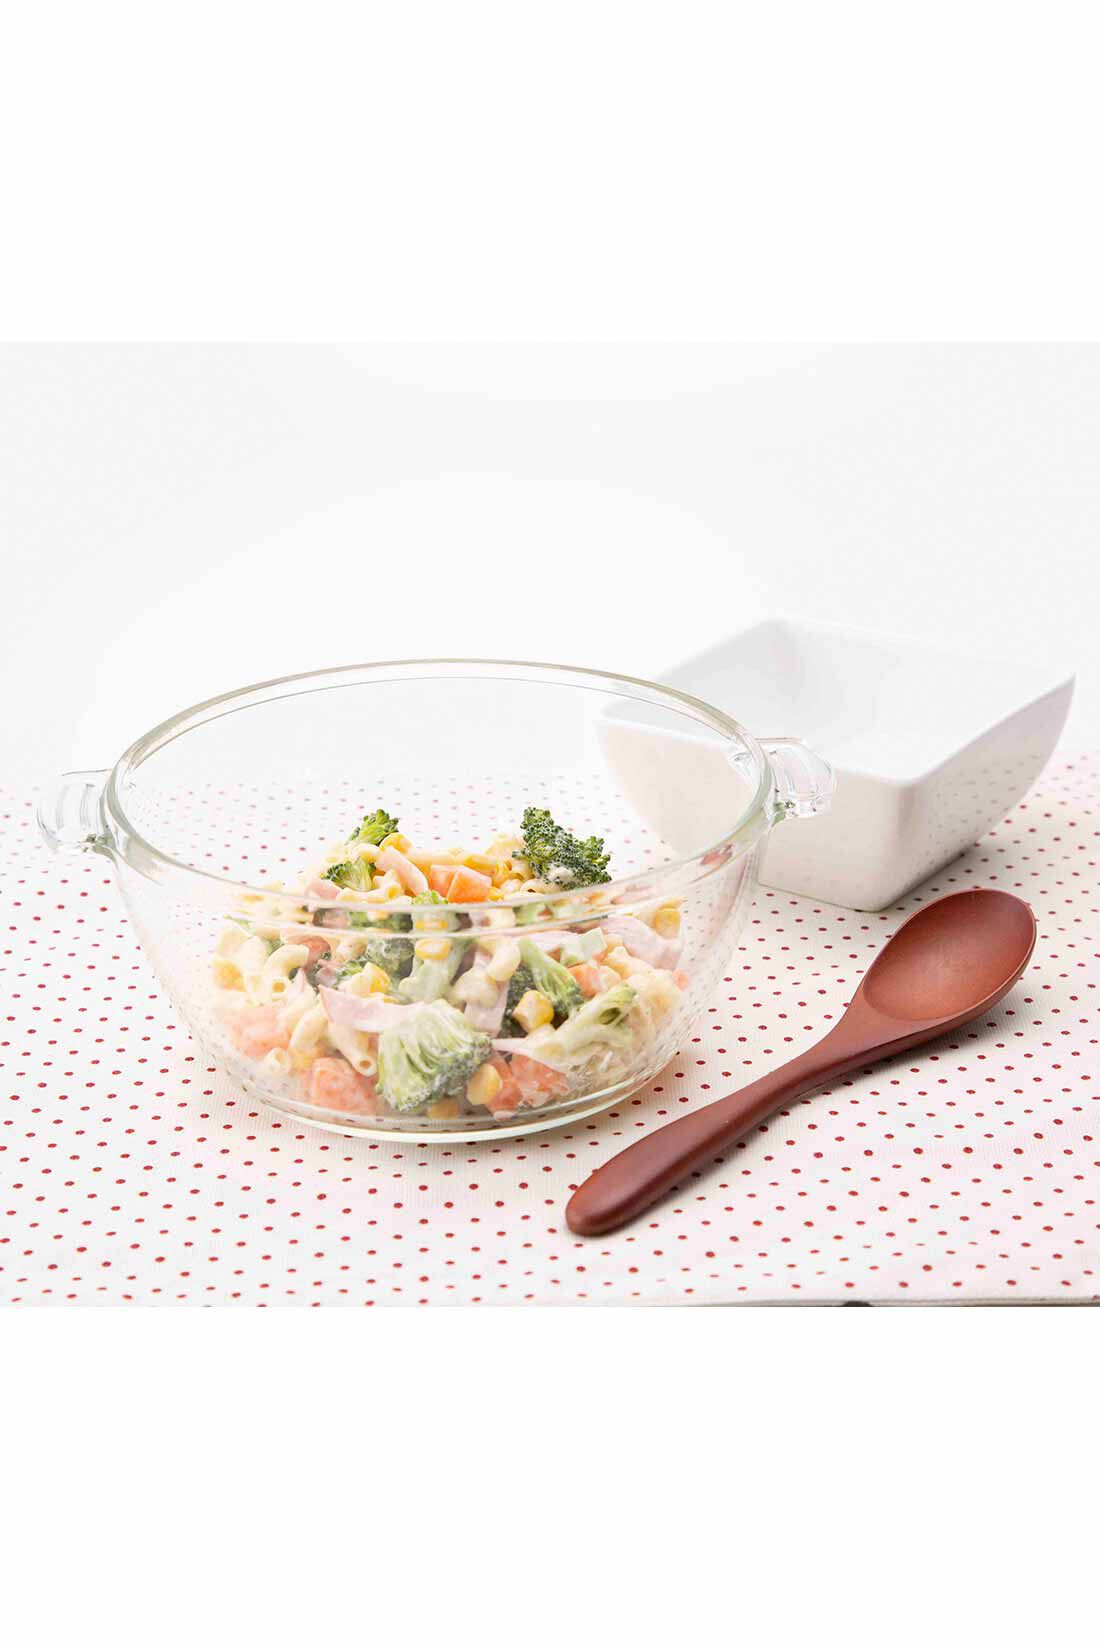 ミニツク|チンするだけおまかせ調理 野菜がたっぷり摂れる耐熱ガラス鍋〈グリーン 1.0L〉